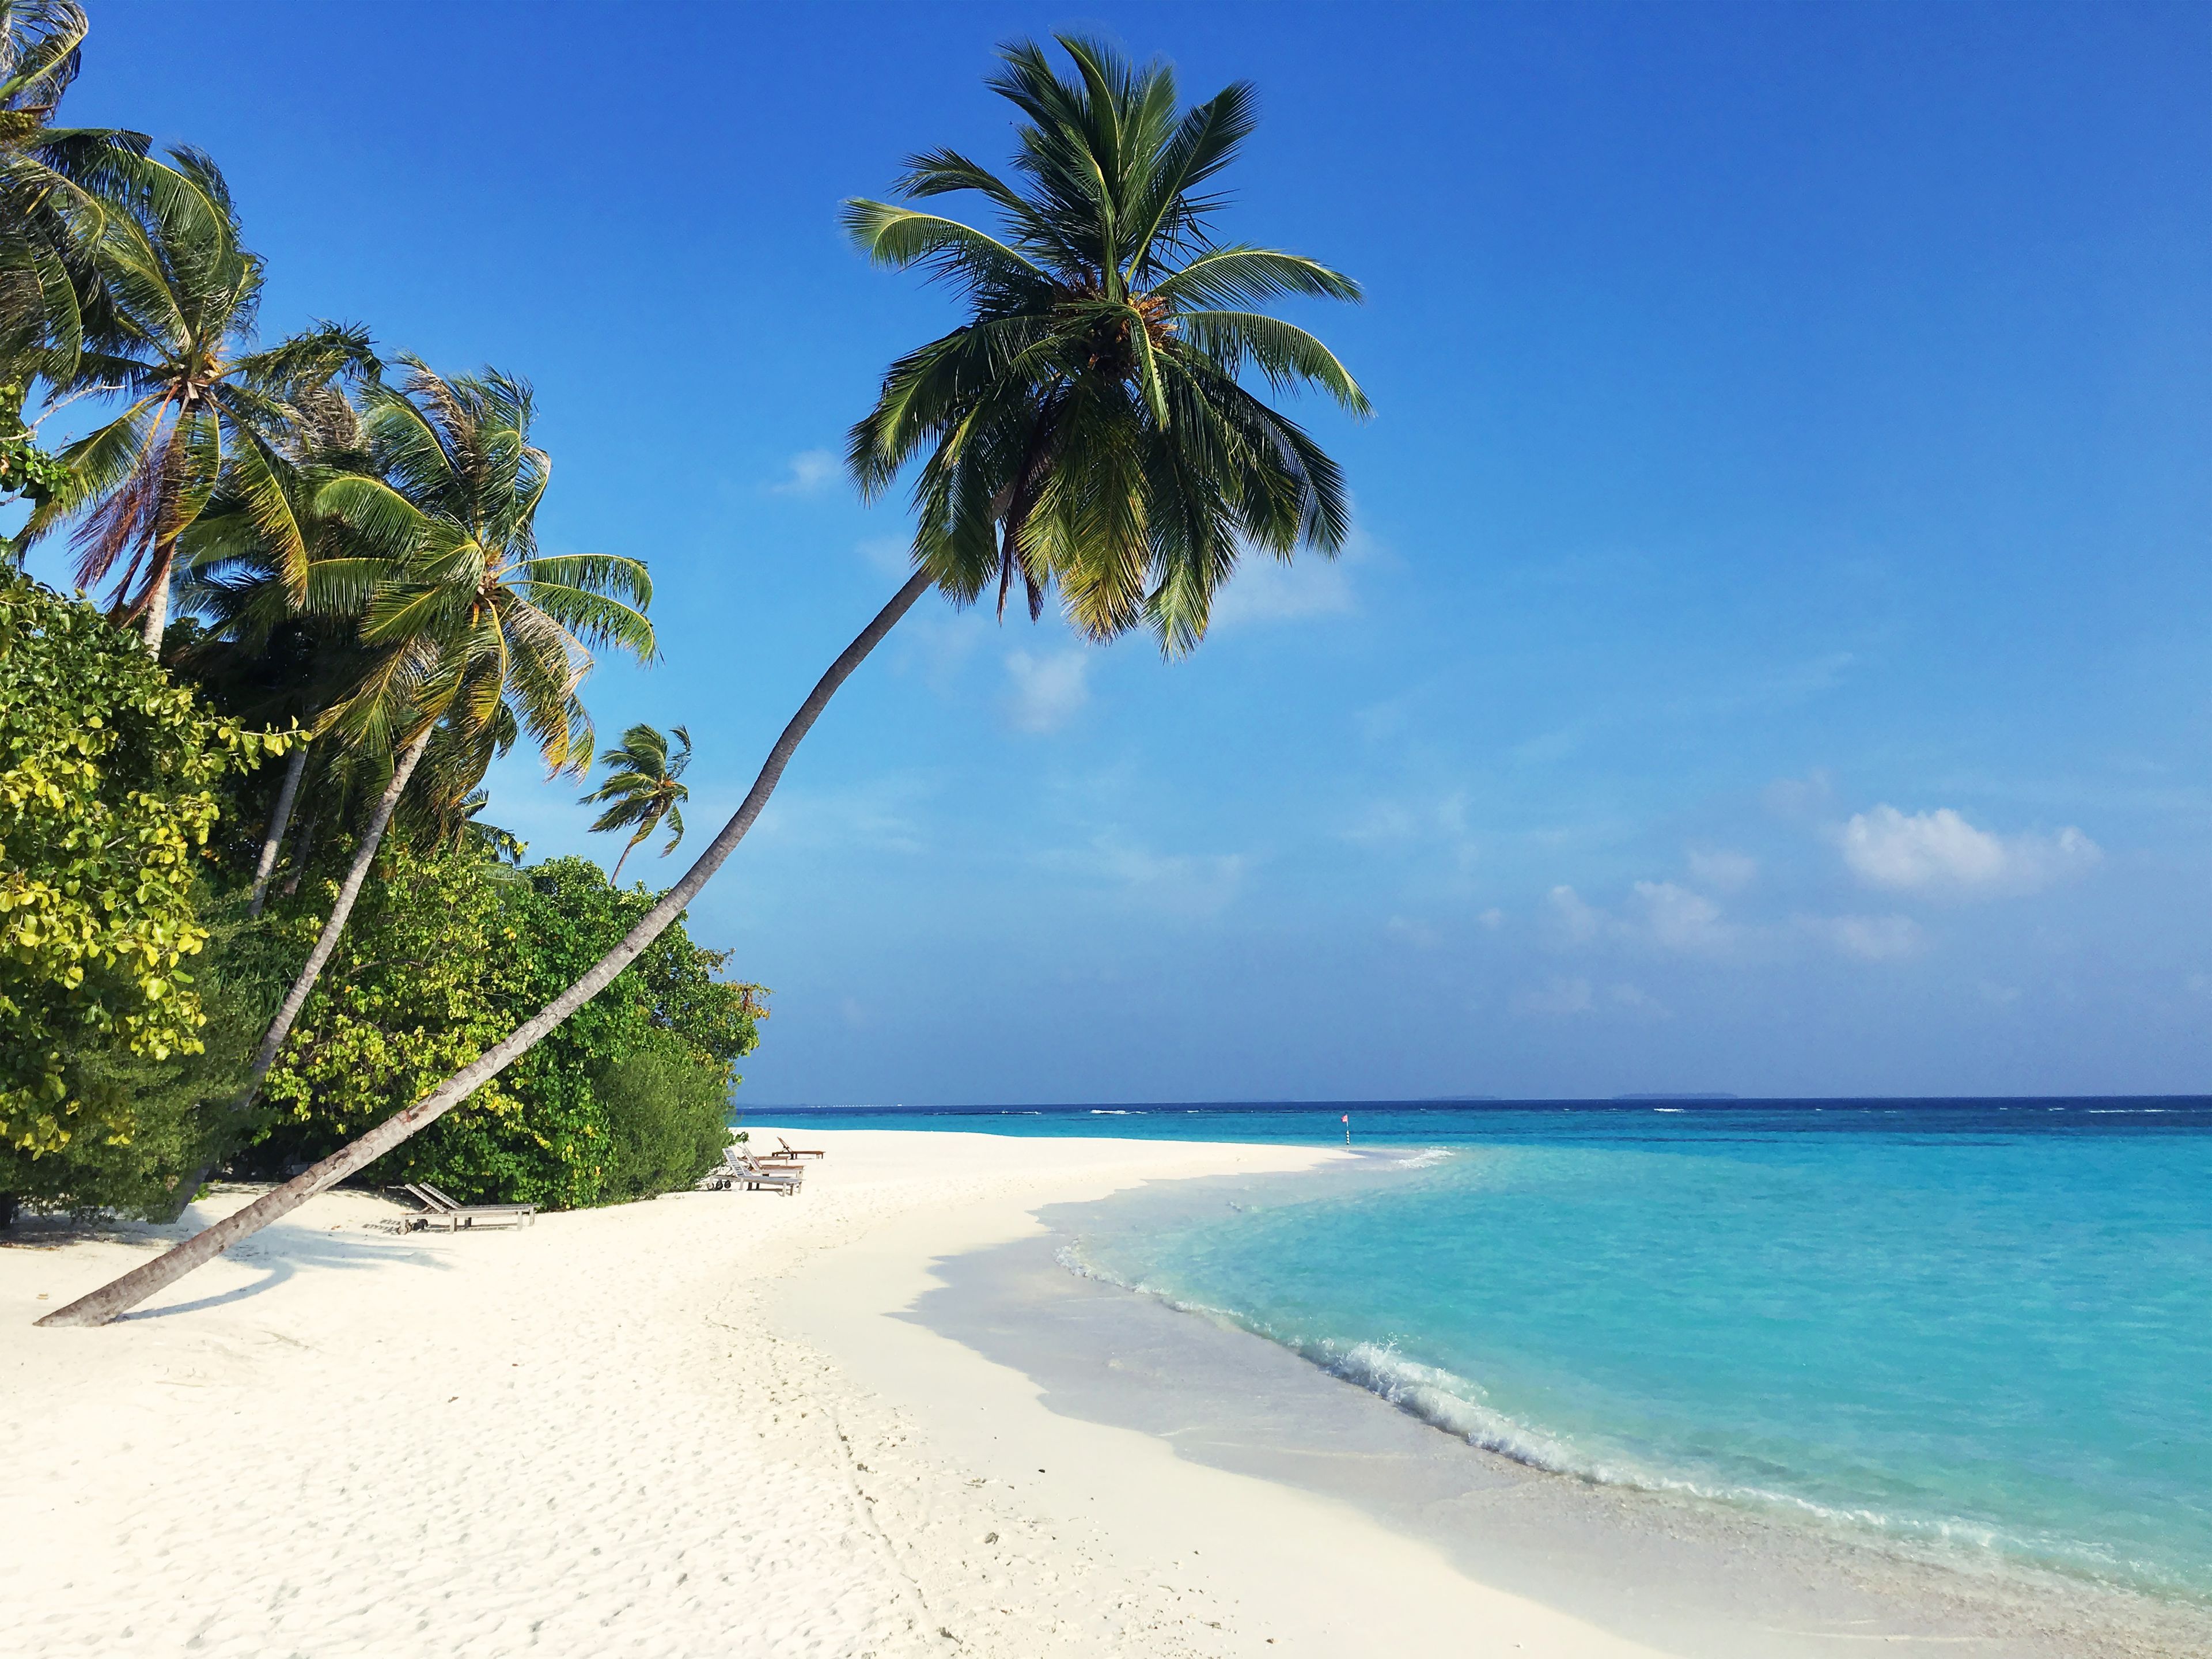 Palmenstrand auf Mauritius im Indischen Ozean